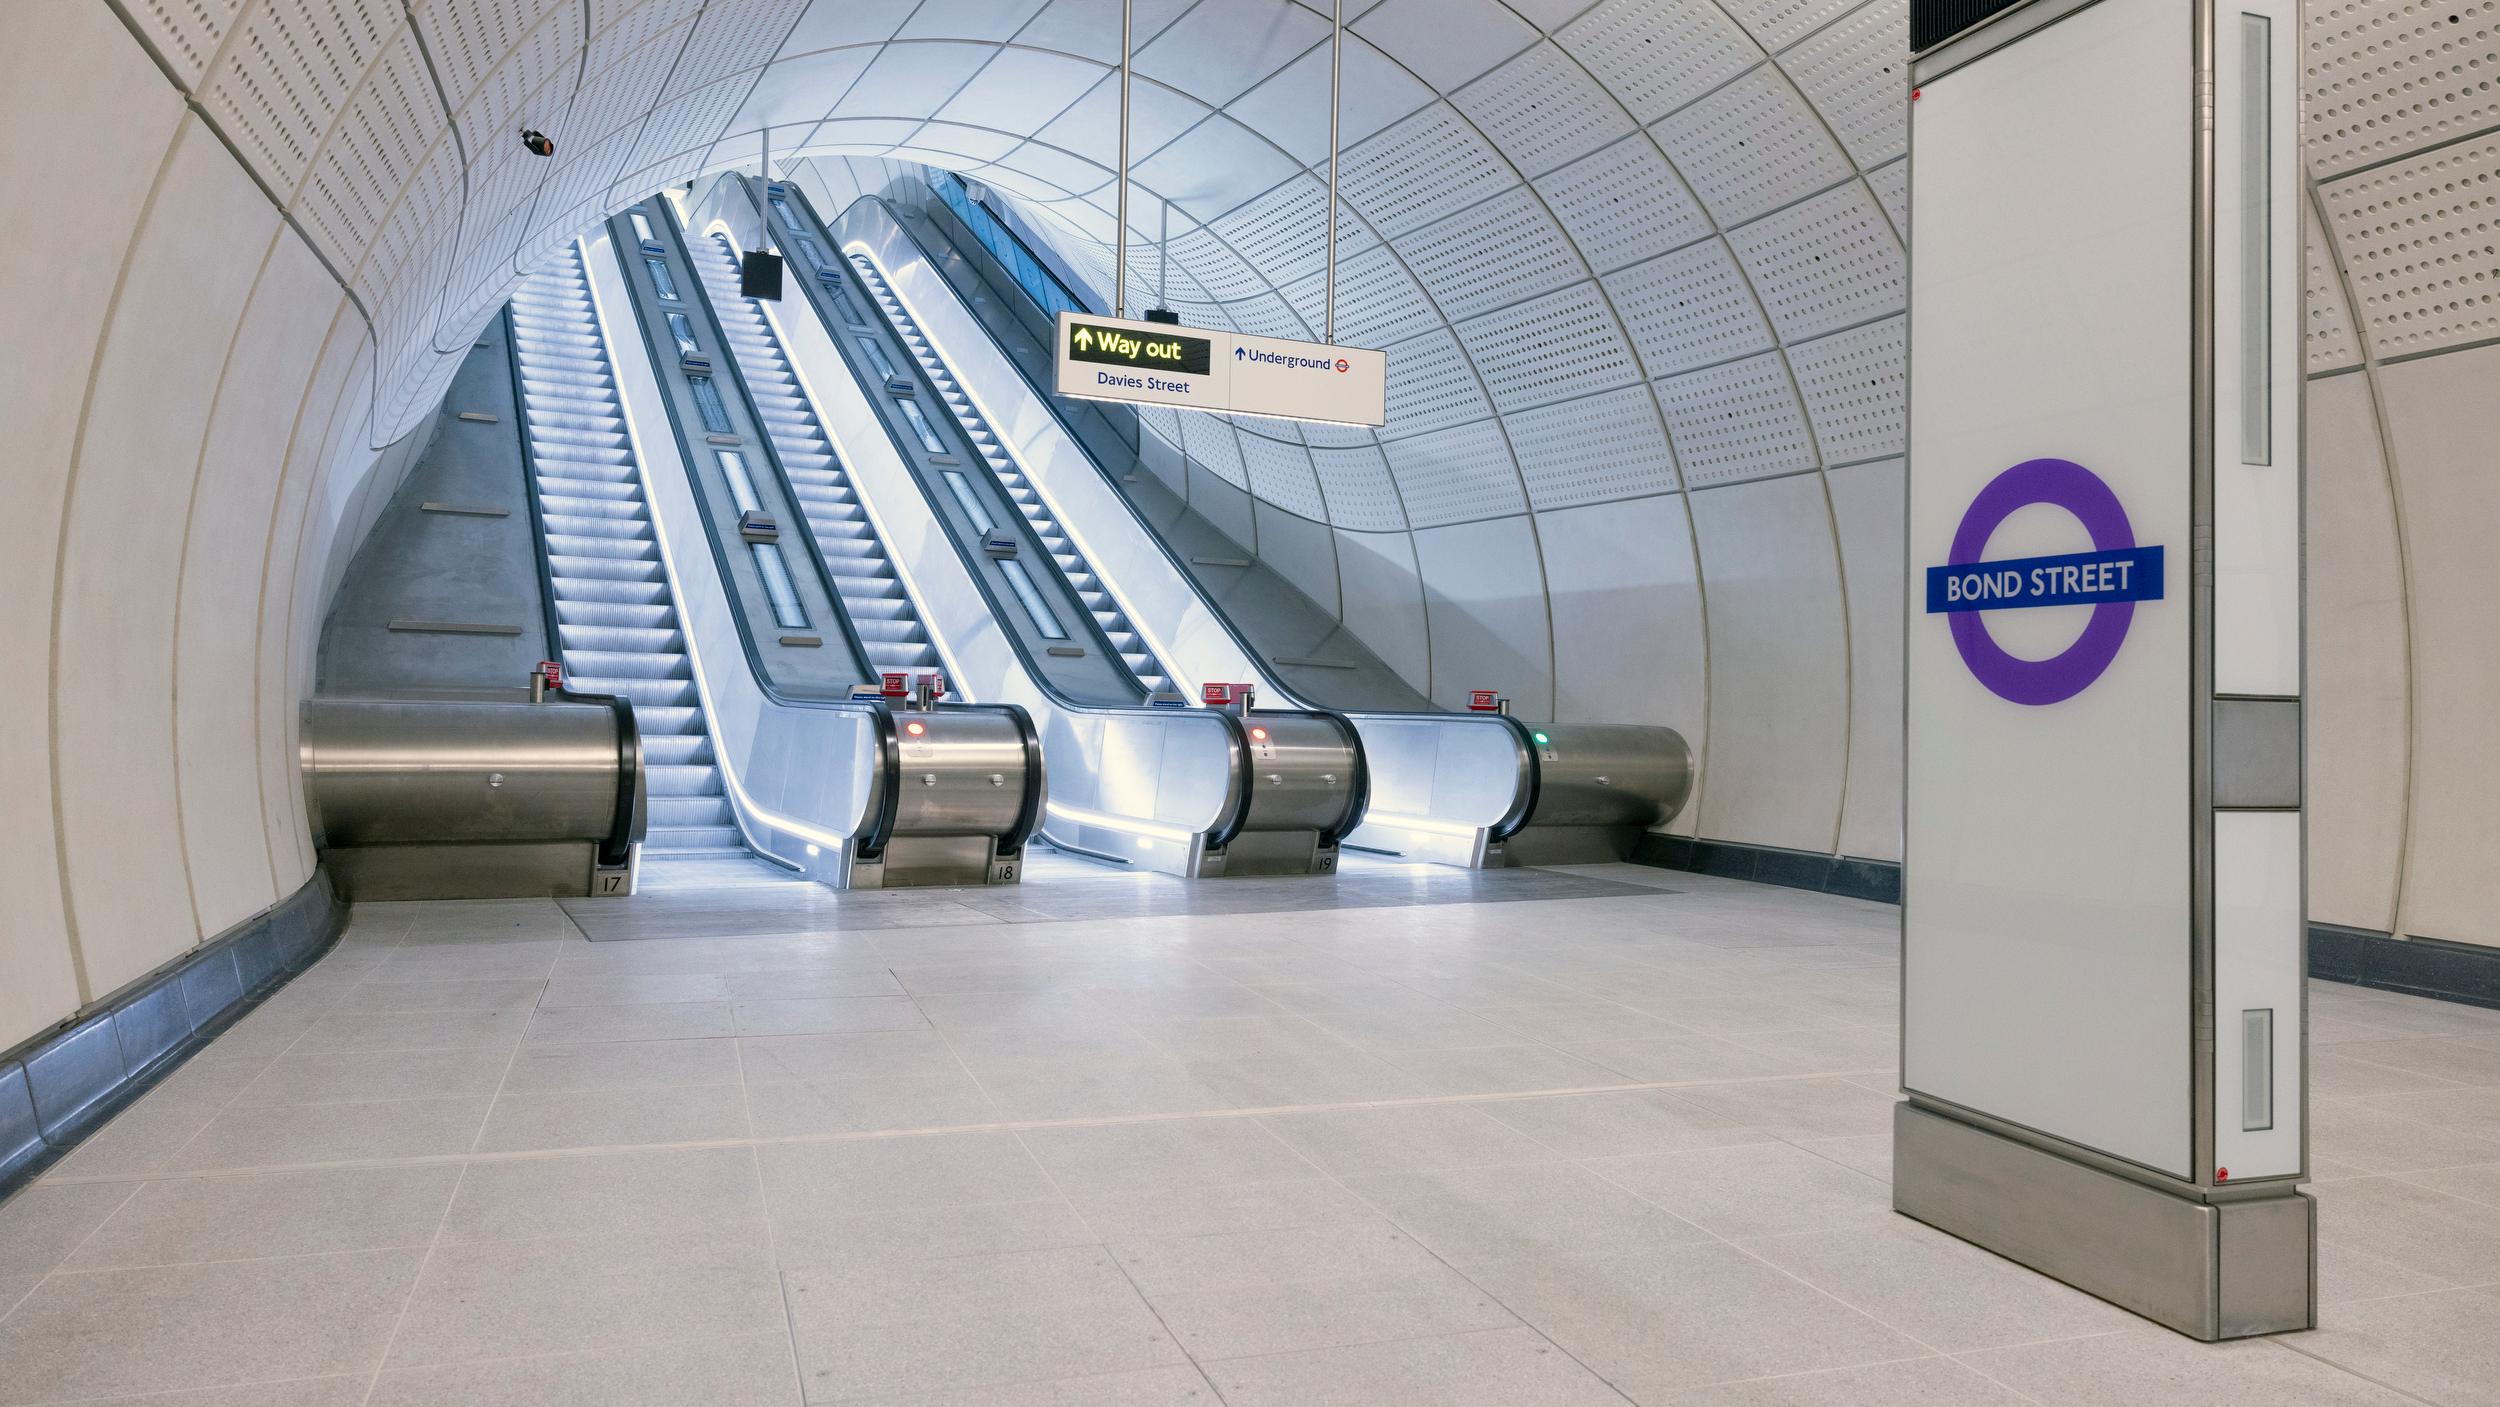 The Elizabeth Line Bond Street station opens in London